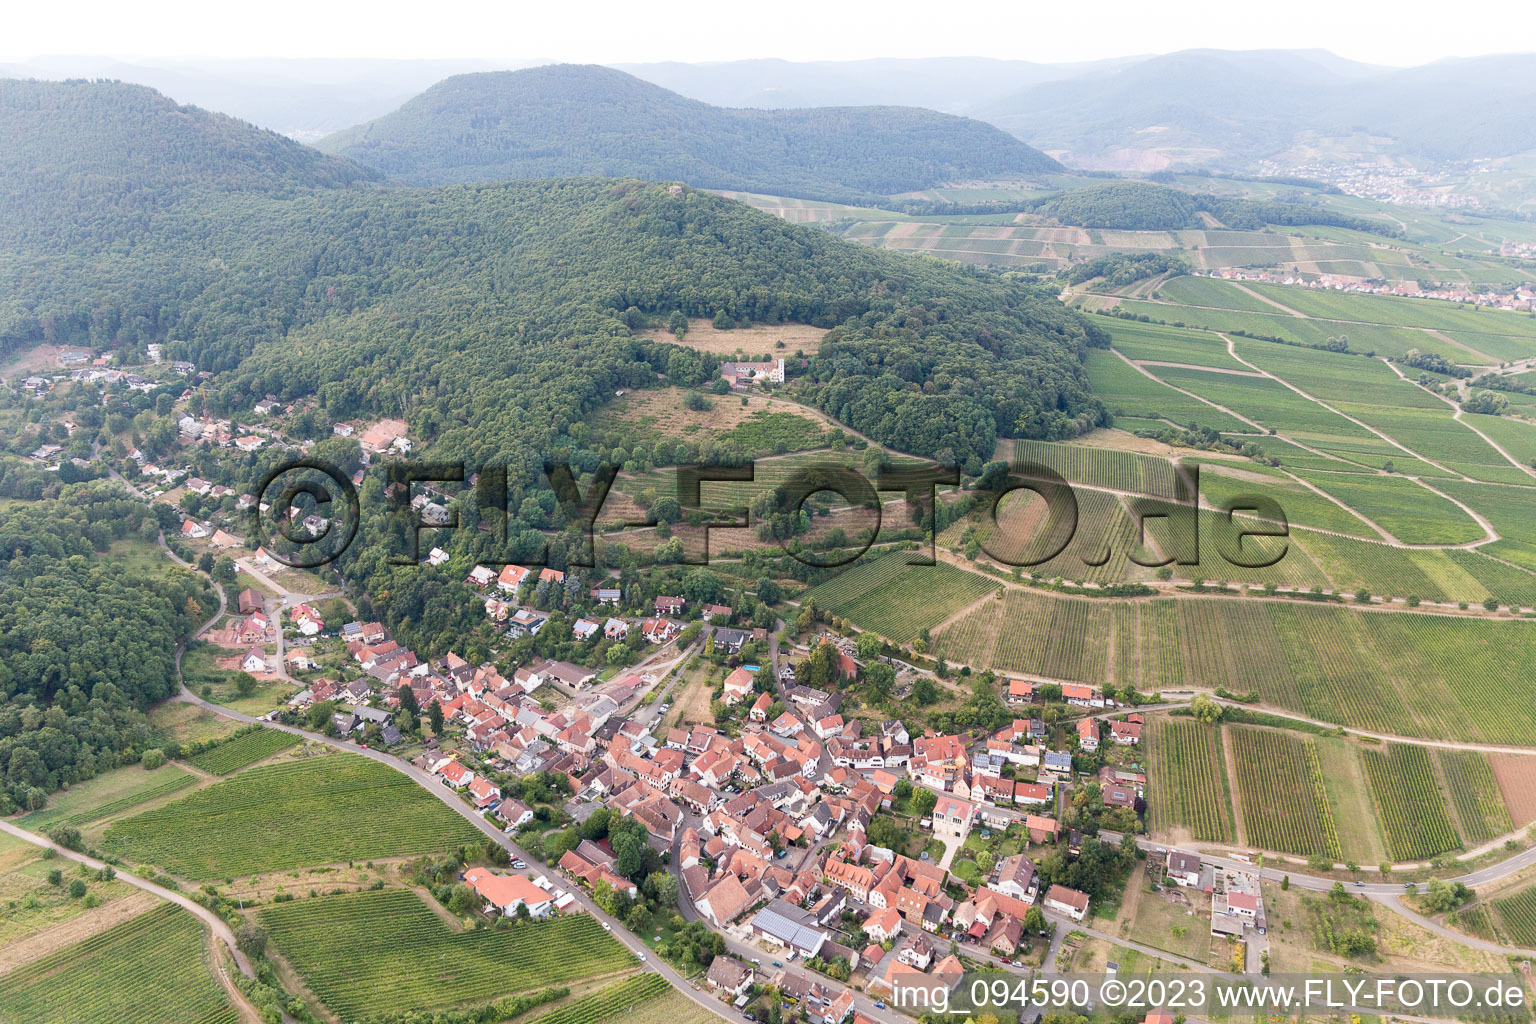 Leinsweiler im Bundesland Rheinland-Pfalz, Deutschland von der Drohne aus gesehen